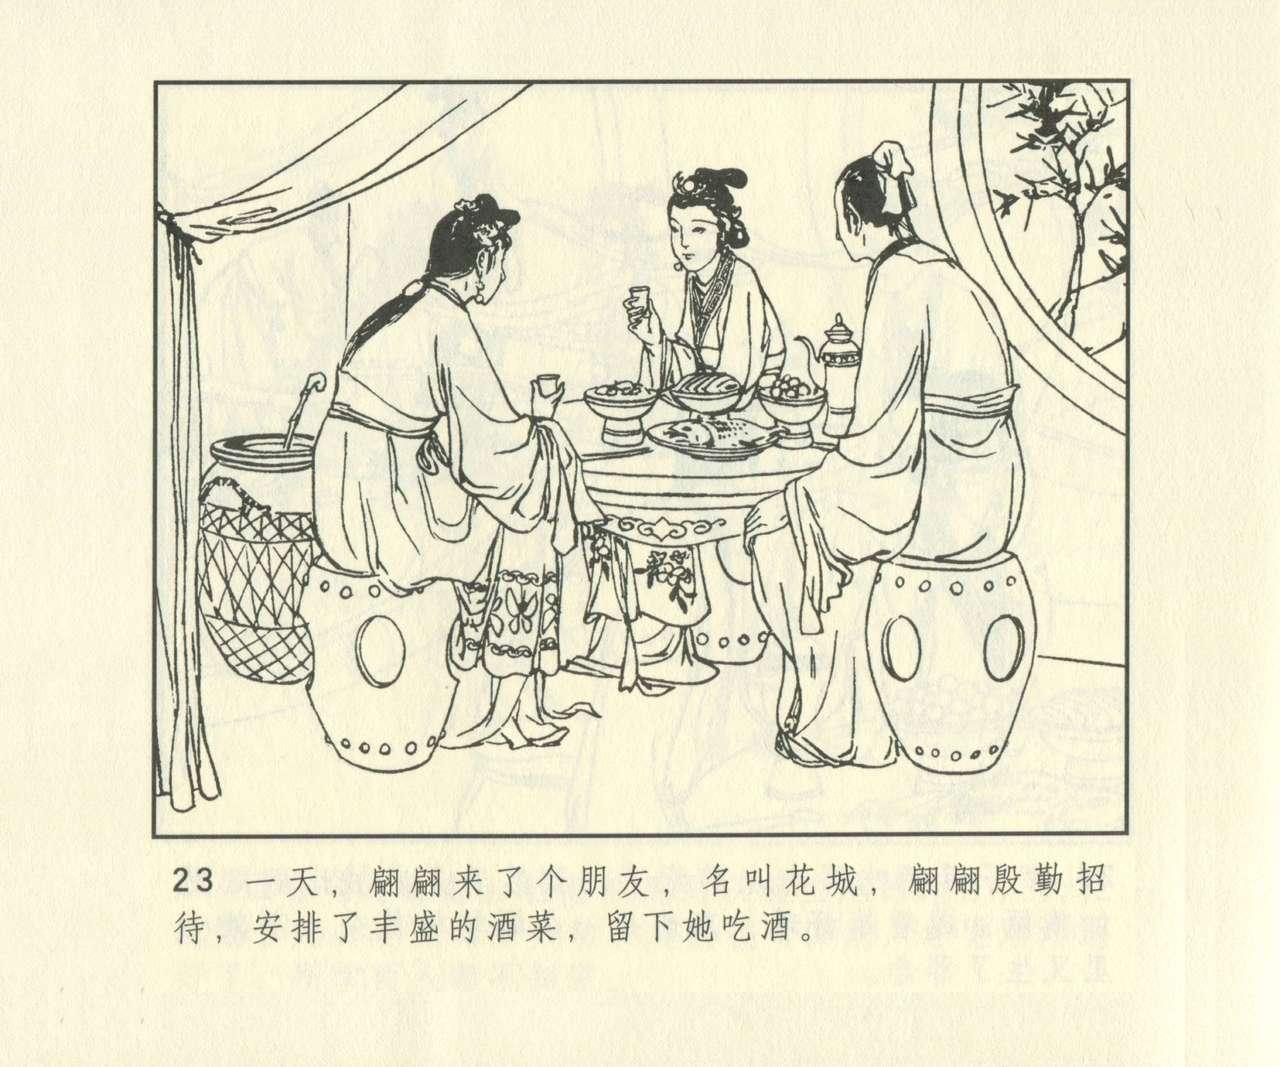 聊斋志异 张玮等绘 天津人民美术出版社 卷二十一 ~ 三十 639